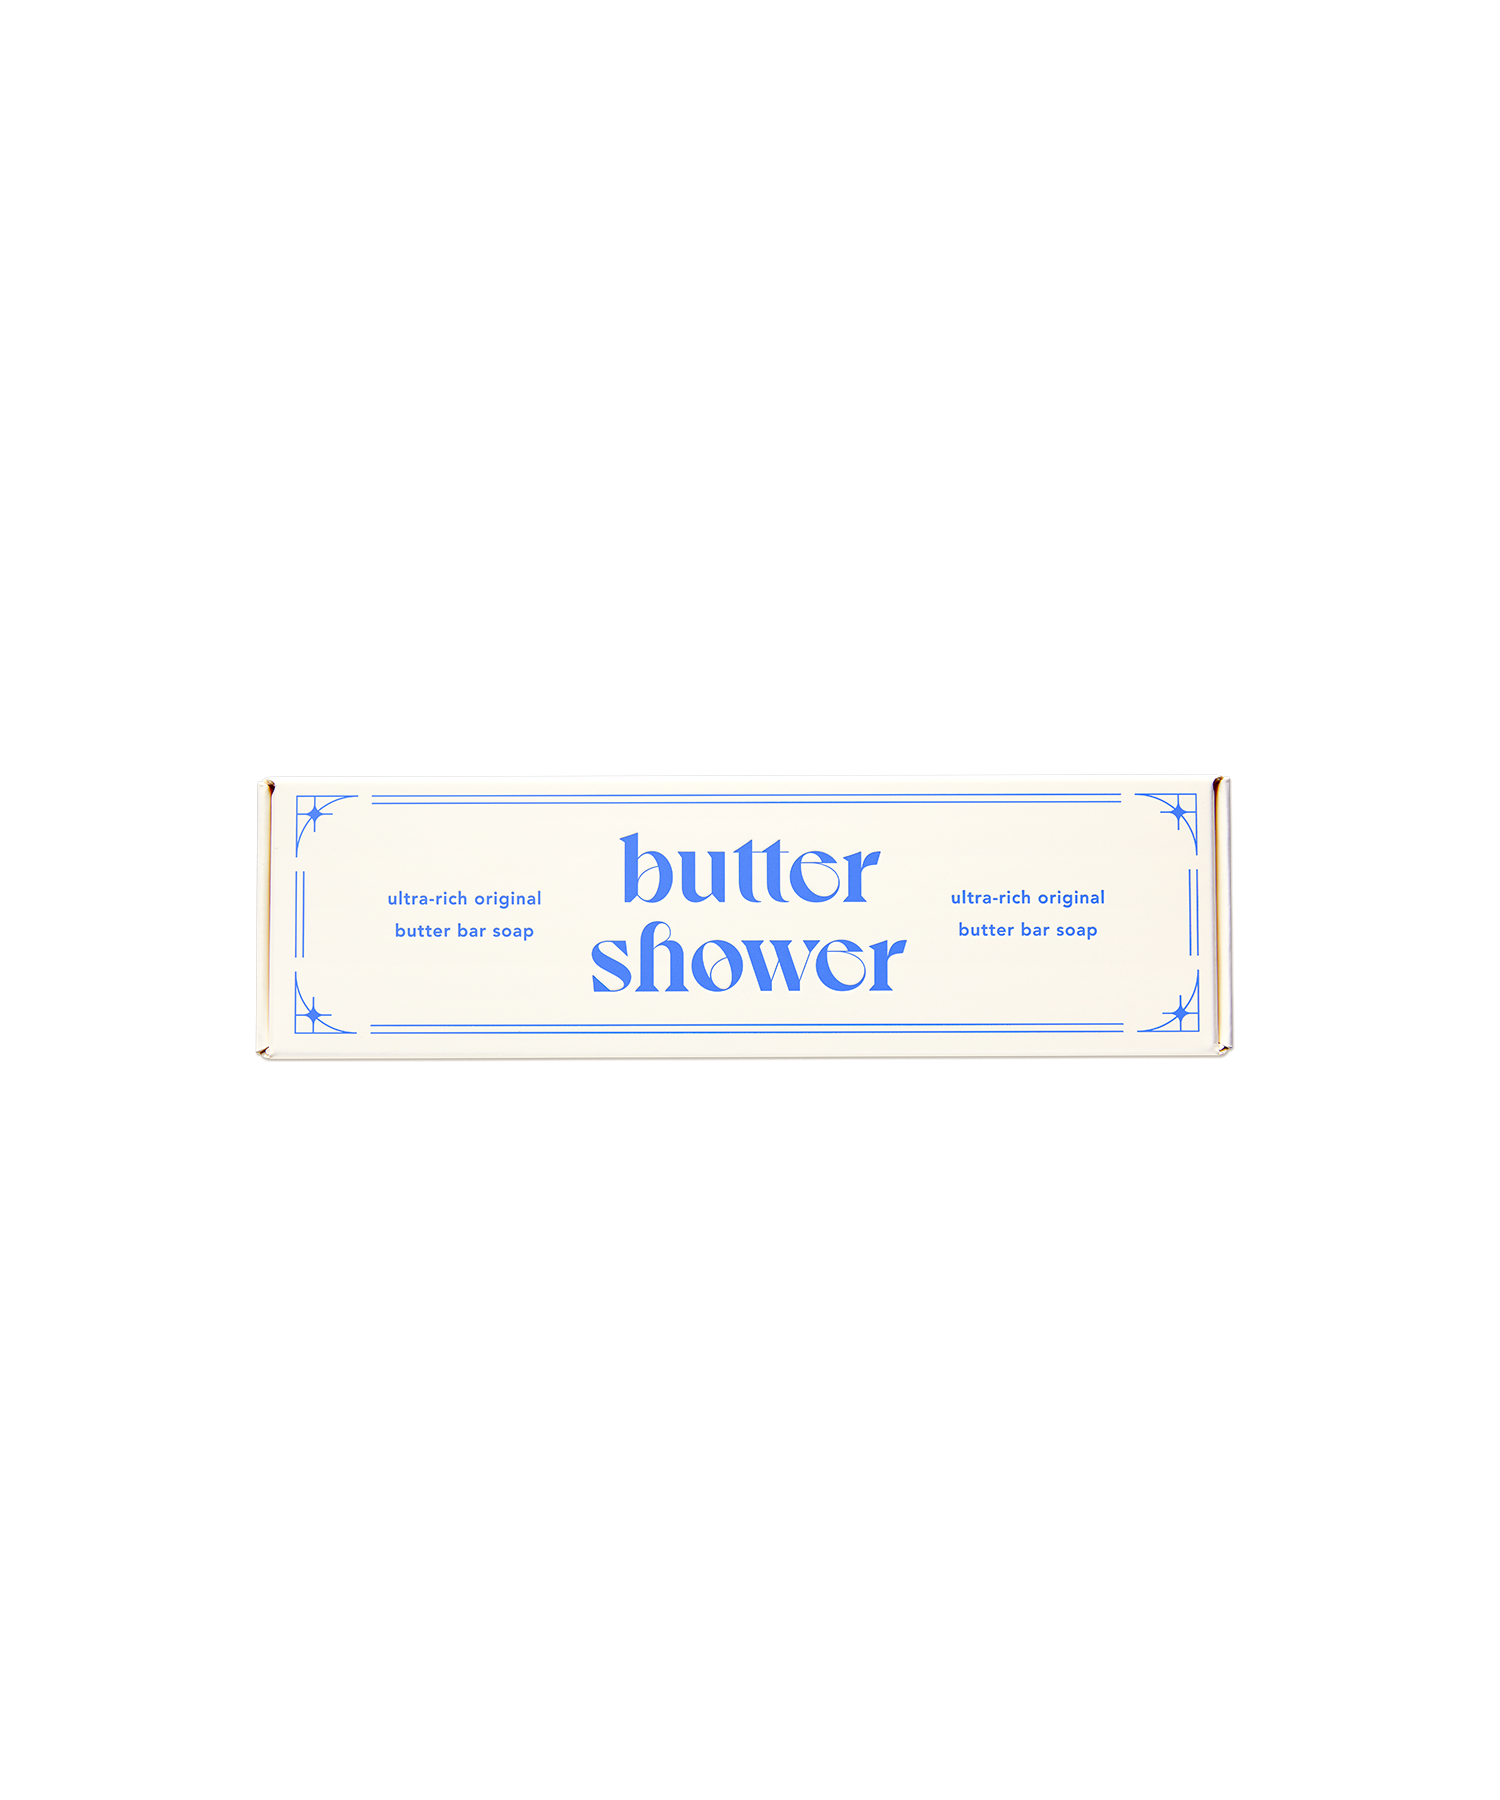 울트라-리치 오리지널 버터 바 솝 - 버터샤워 butter shower